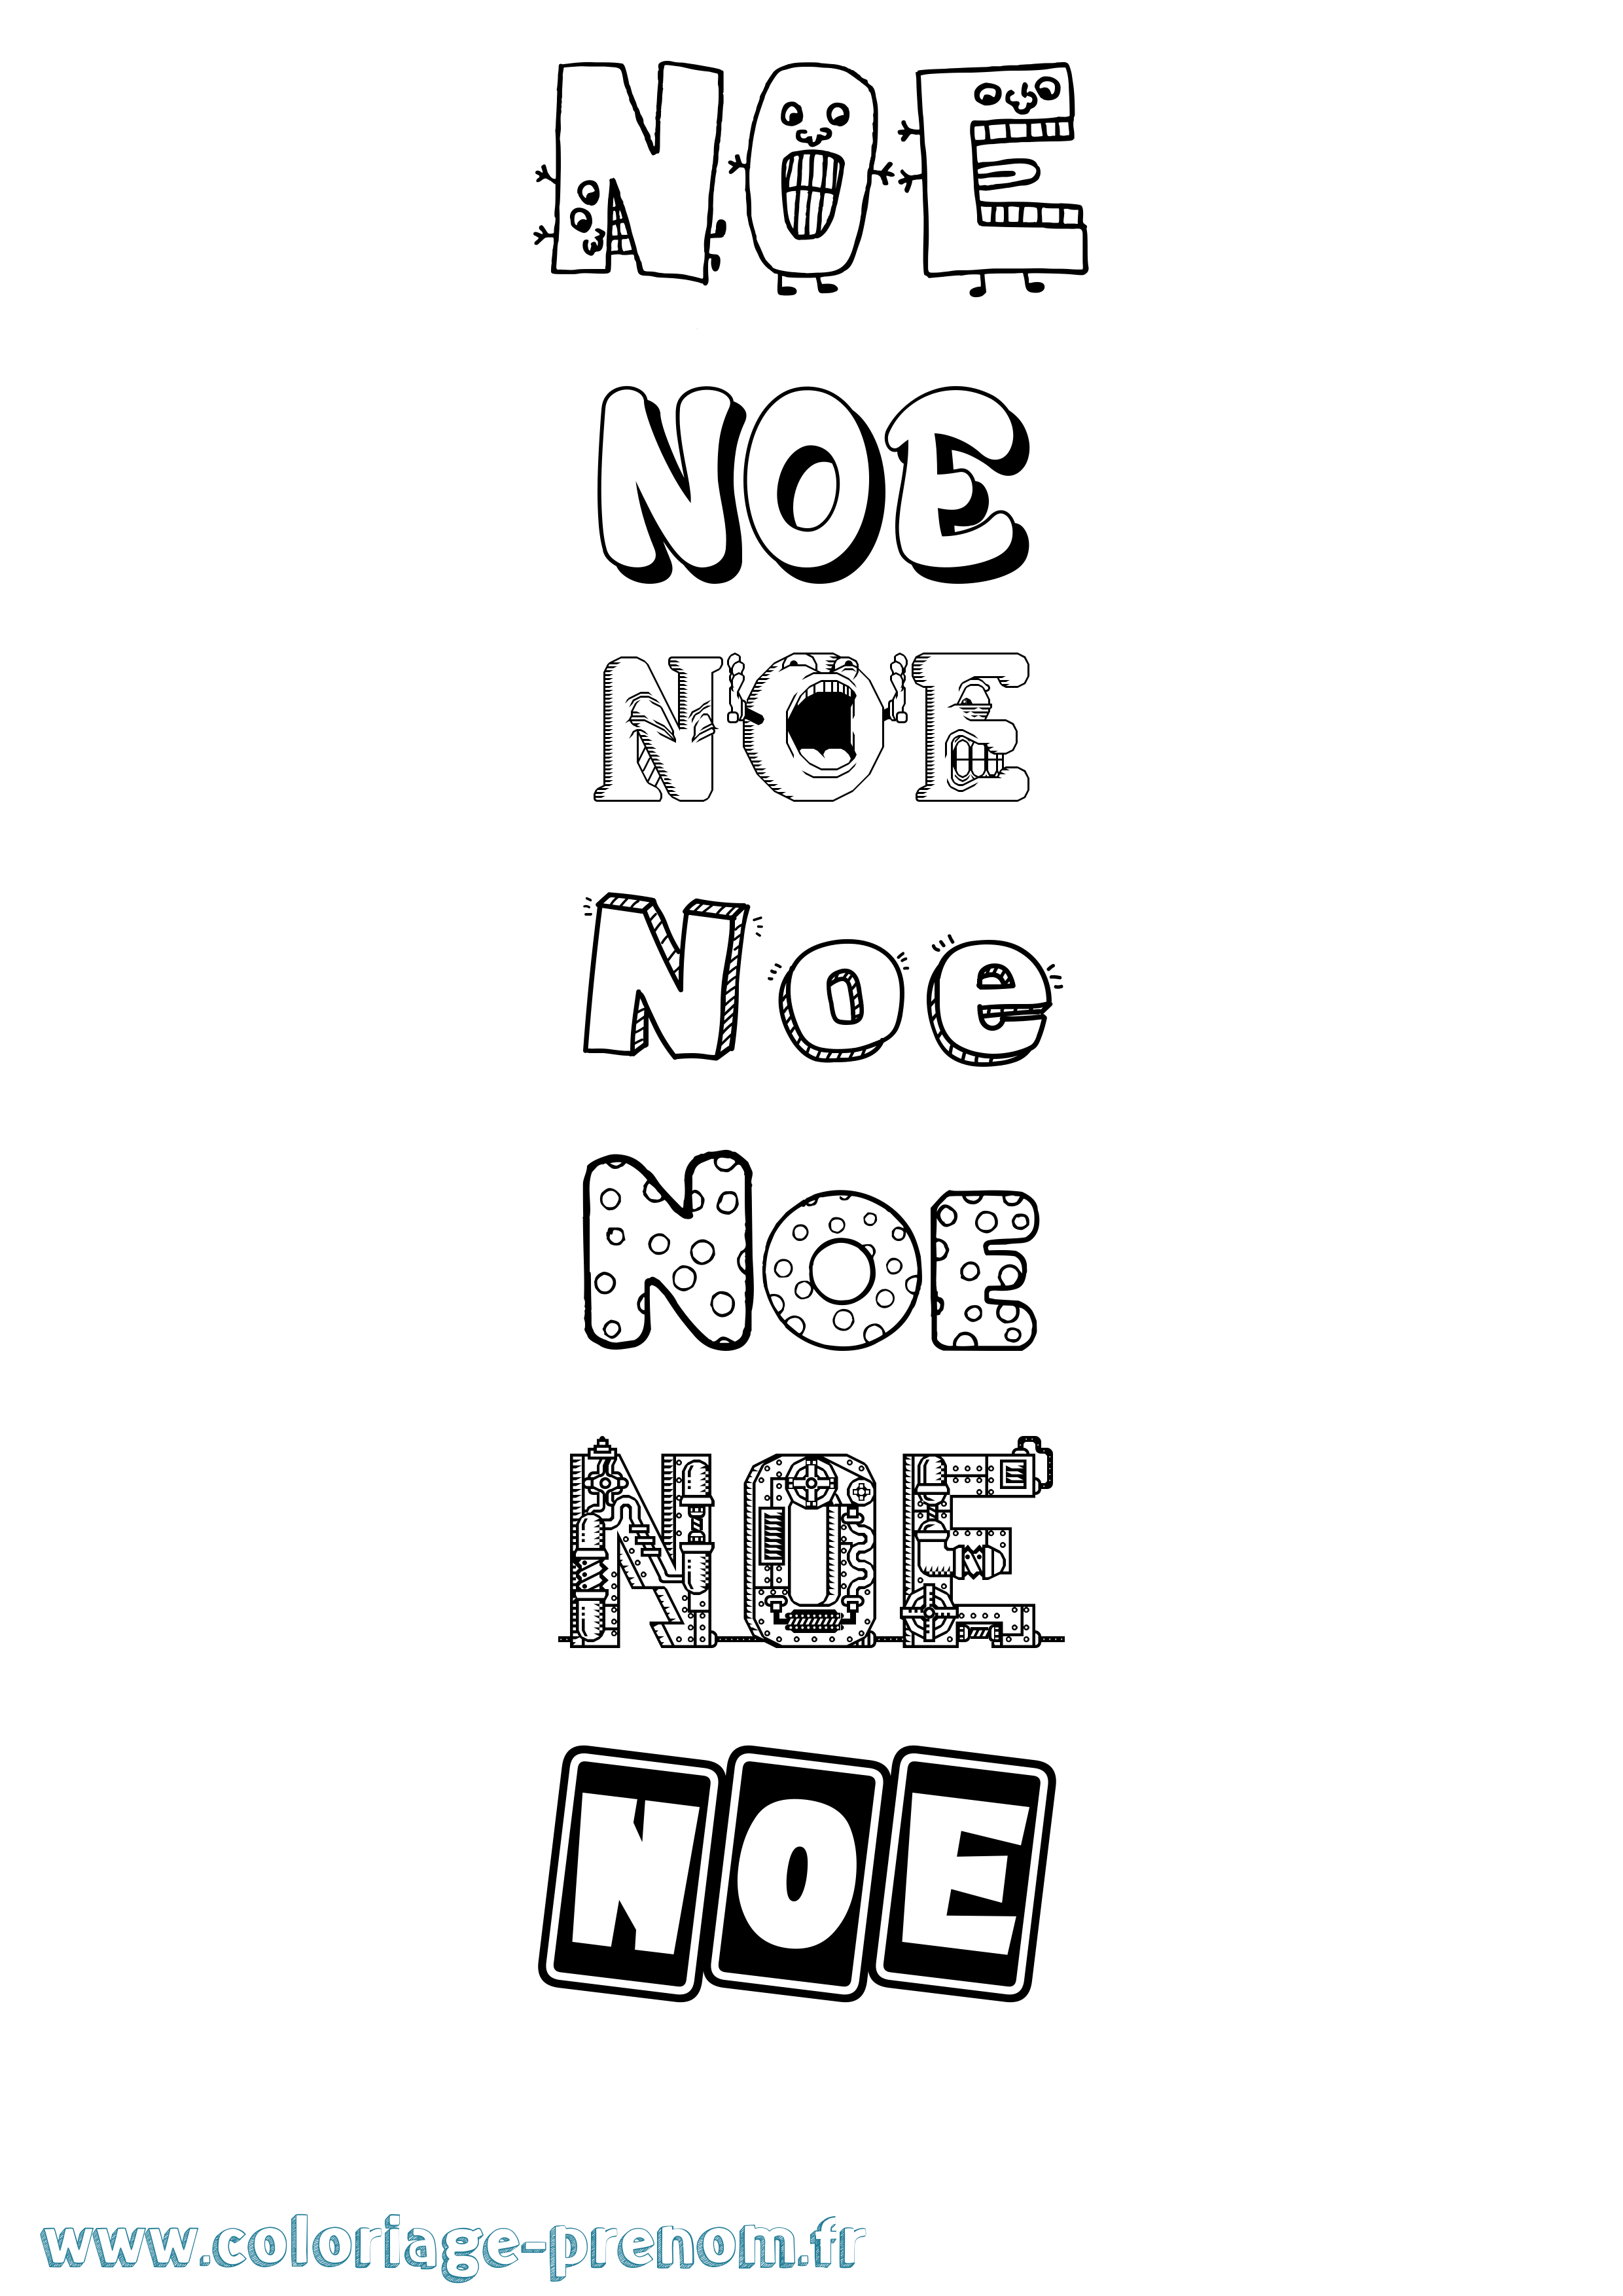 Coloriage prénom Noe Fun